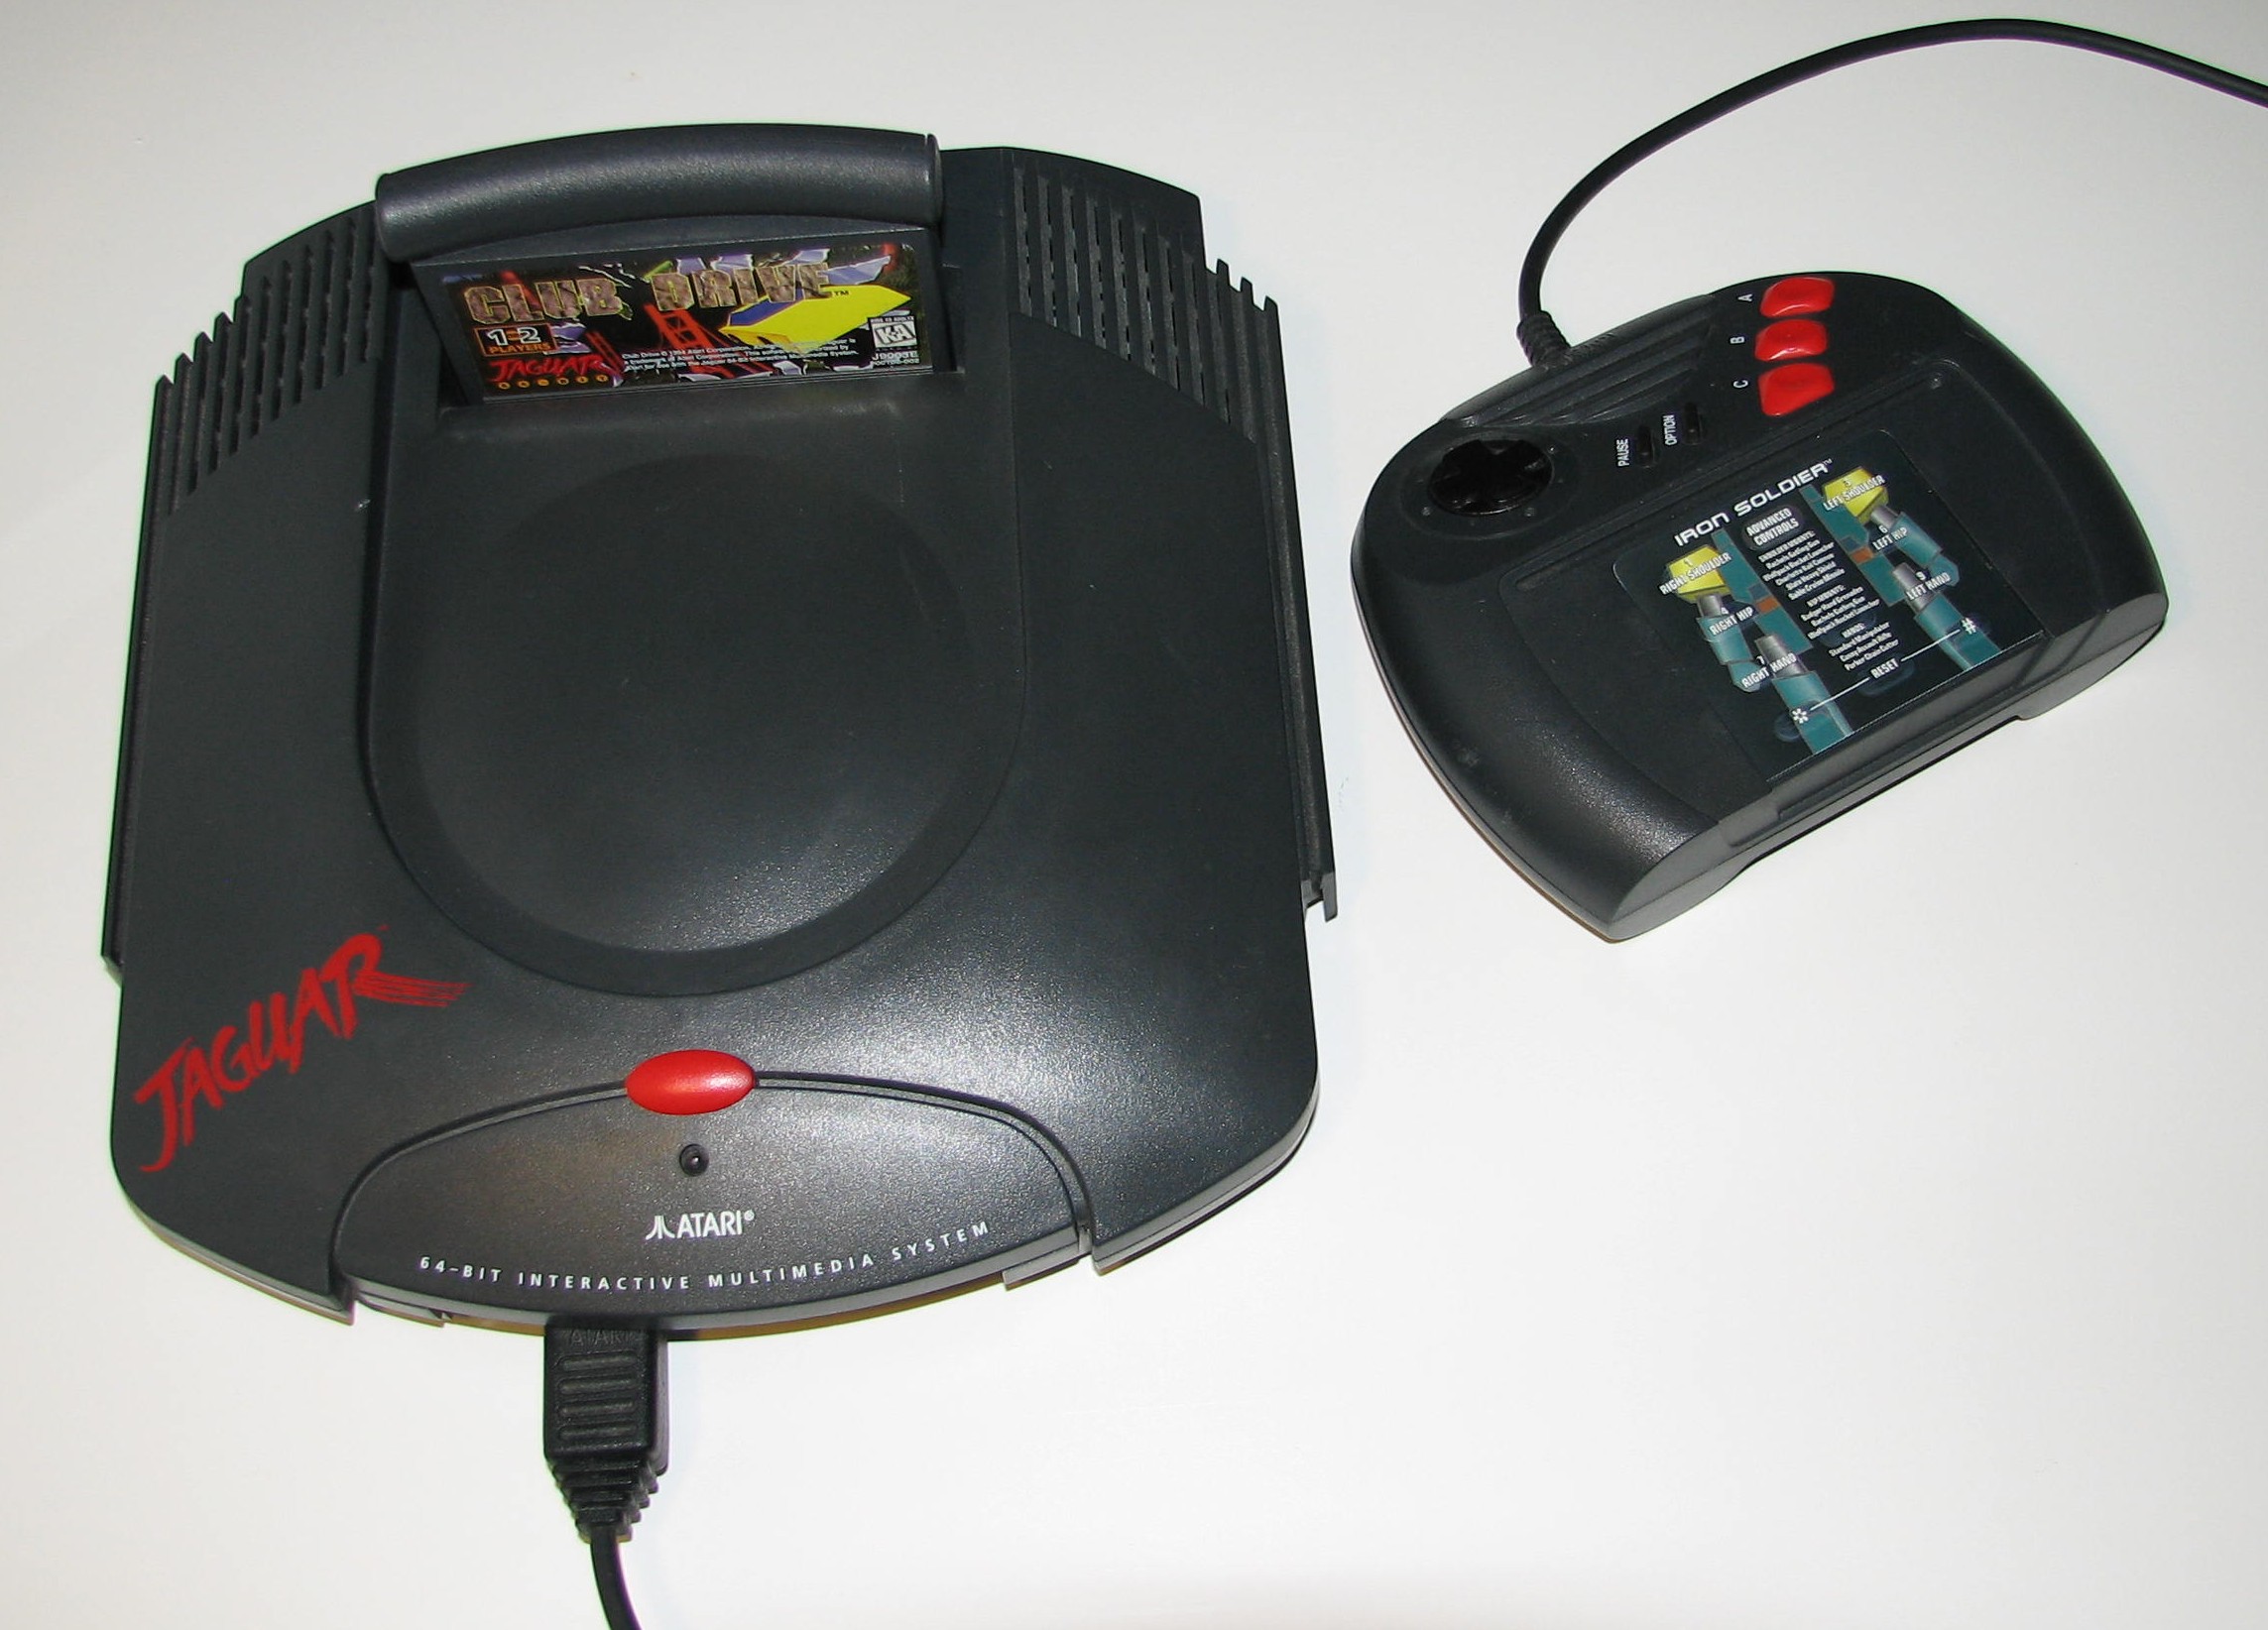 jaguar video game system